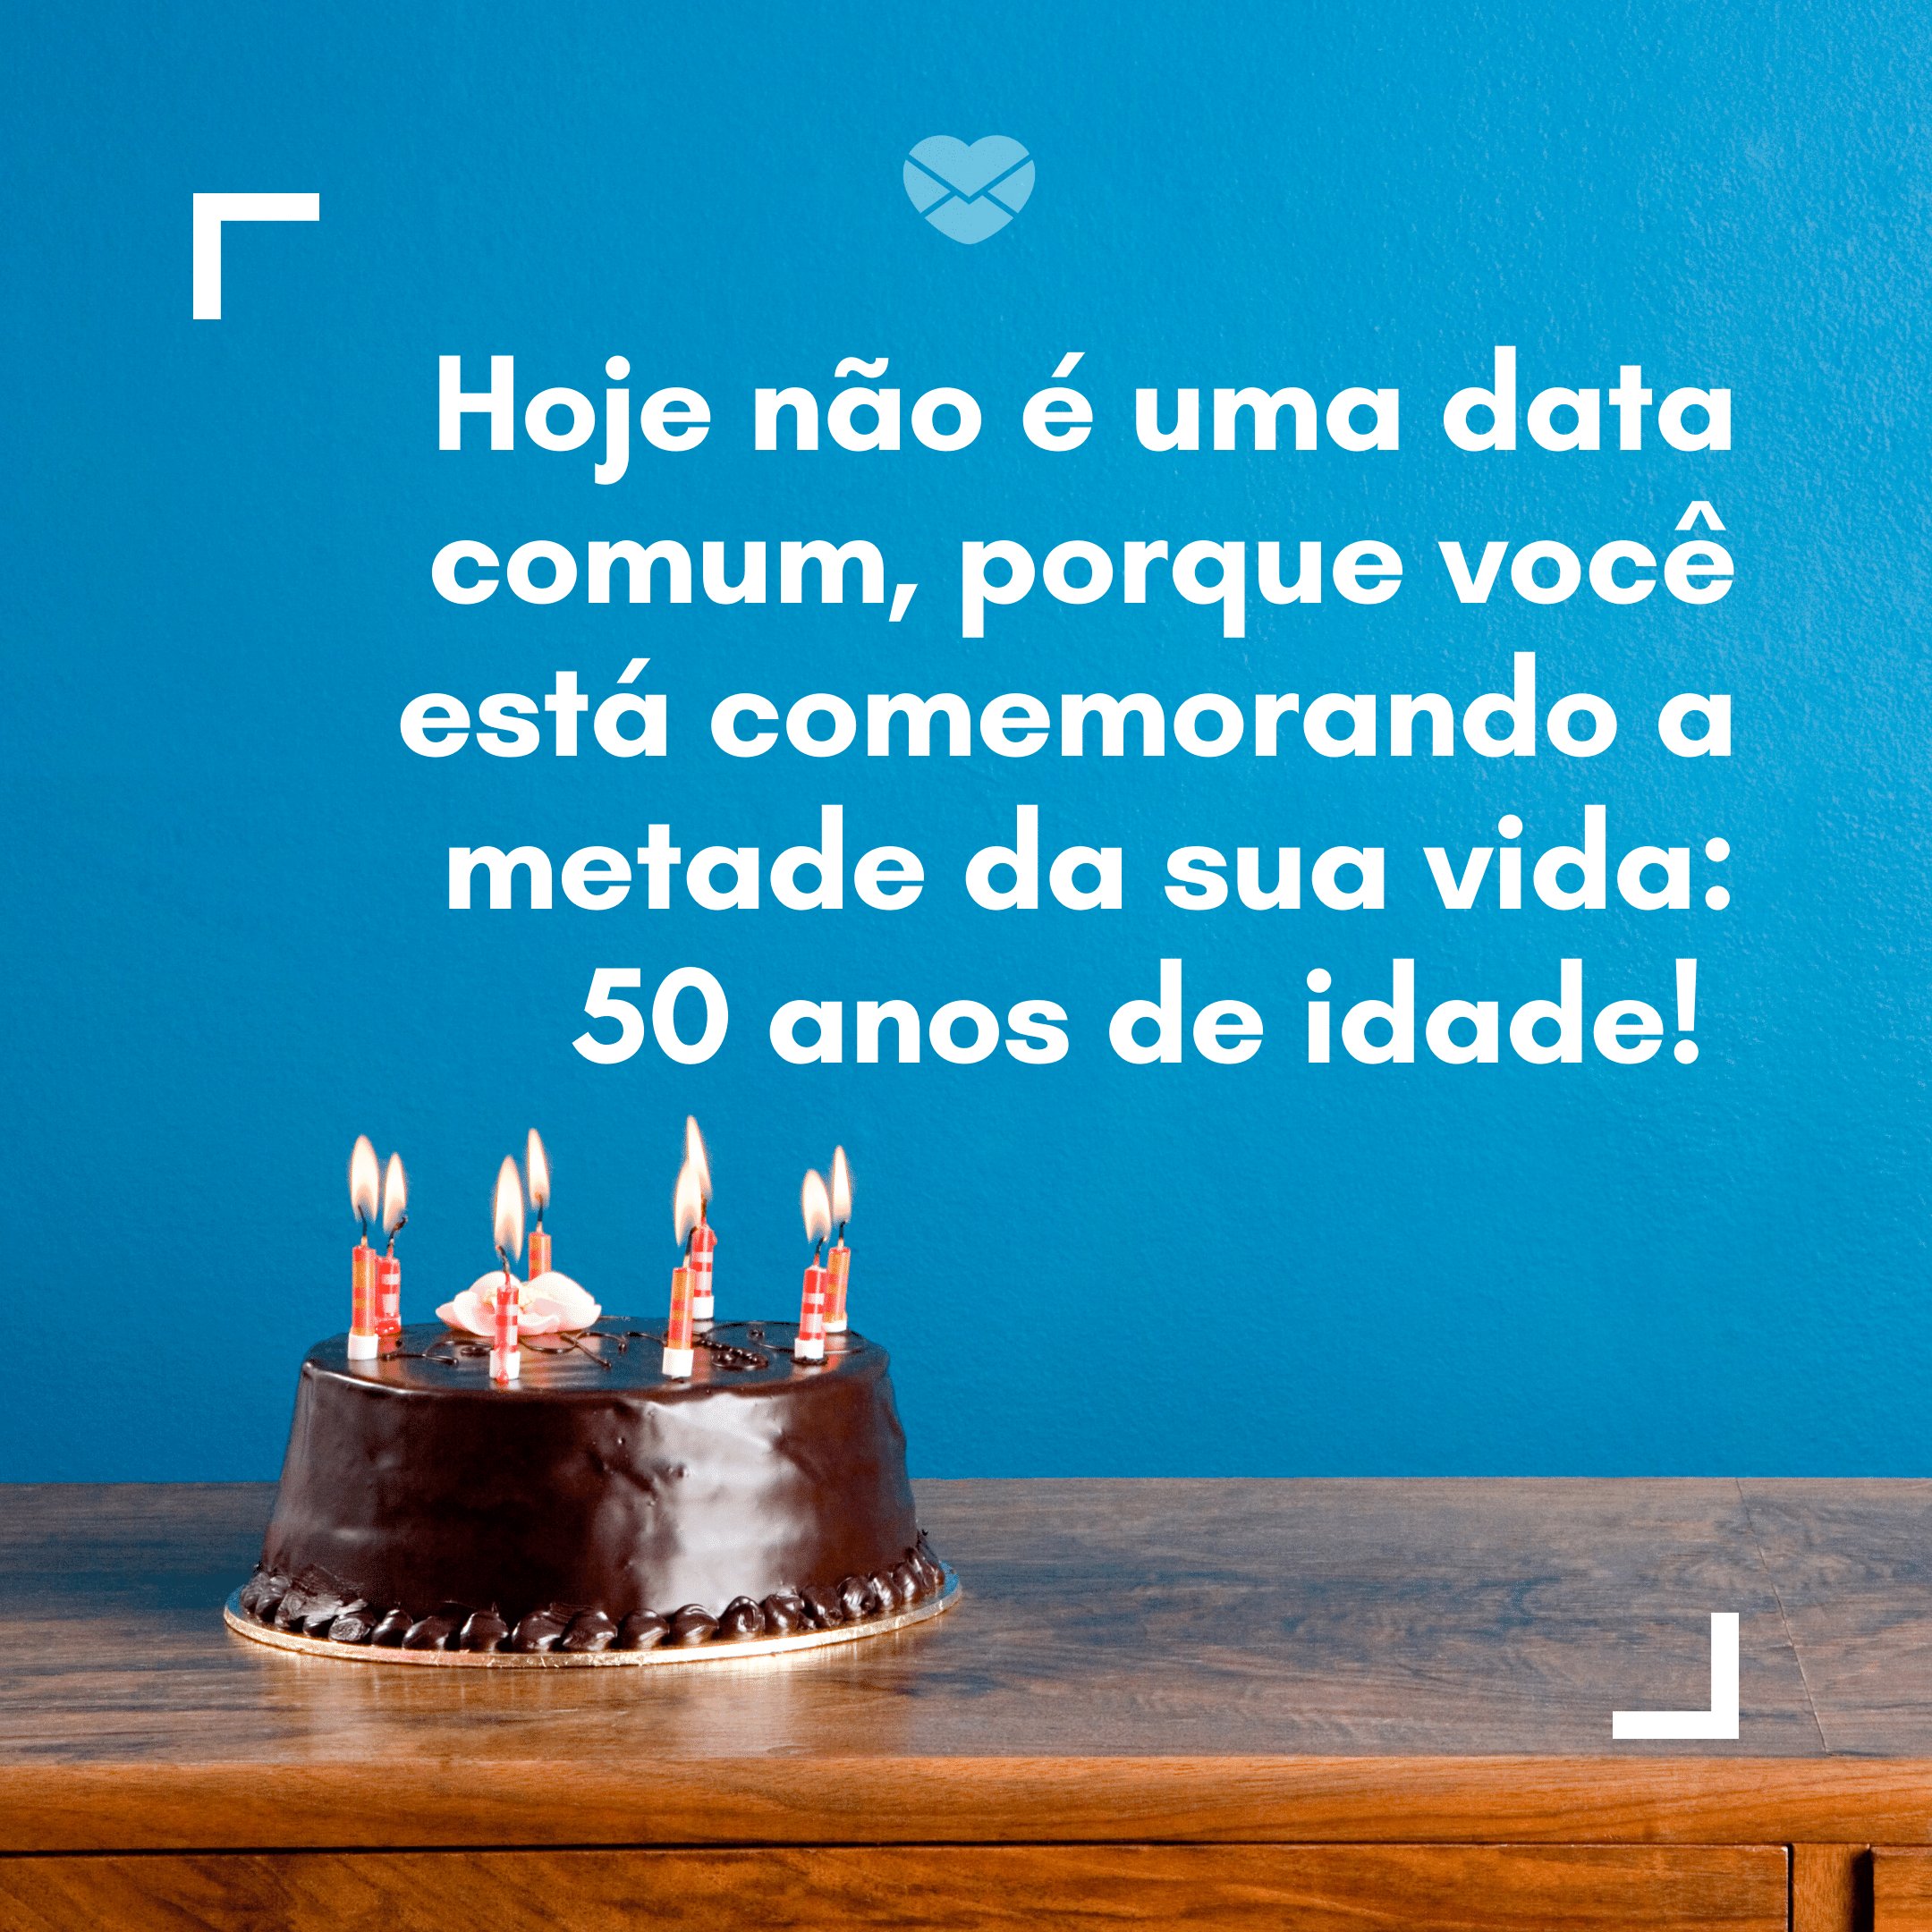 'Hoje não é uma data comum, porque você está comemorando a metade da sua vida: 50 anos de idade!' -